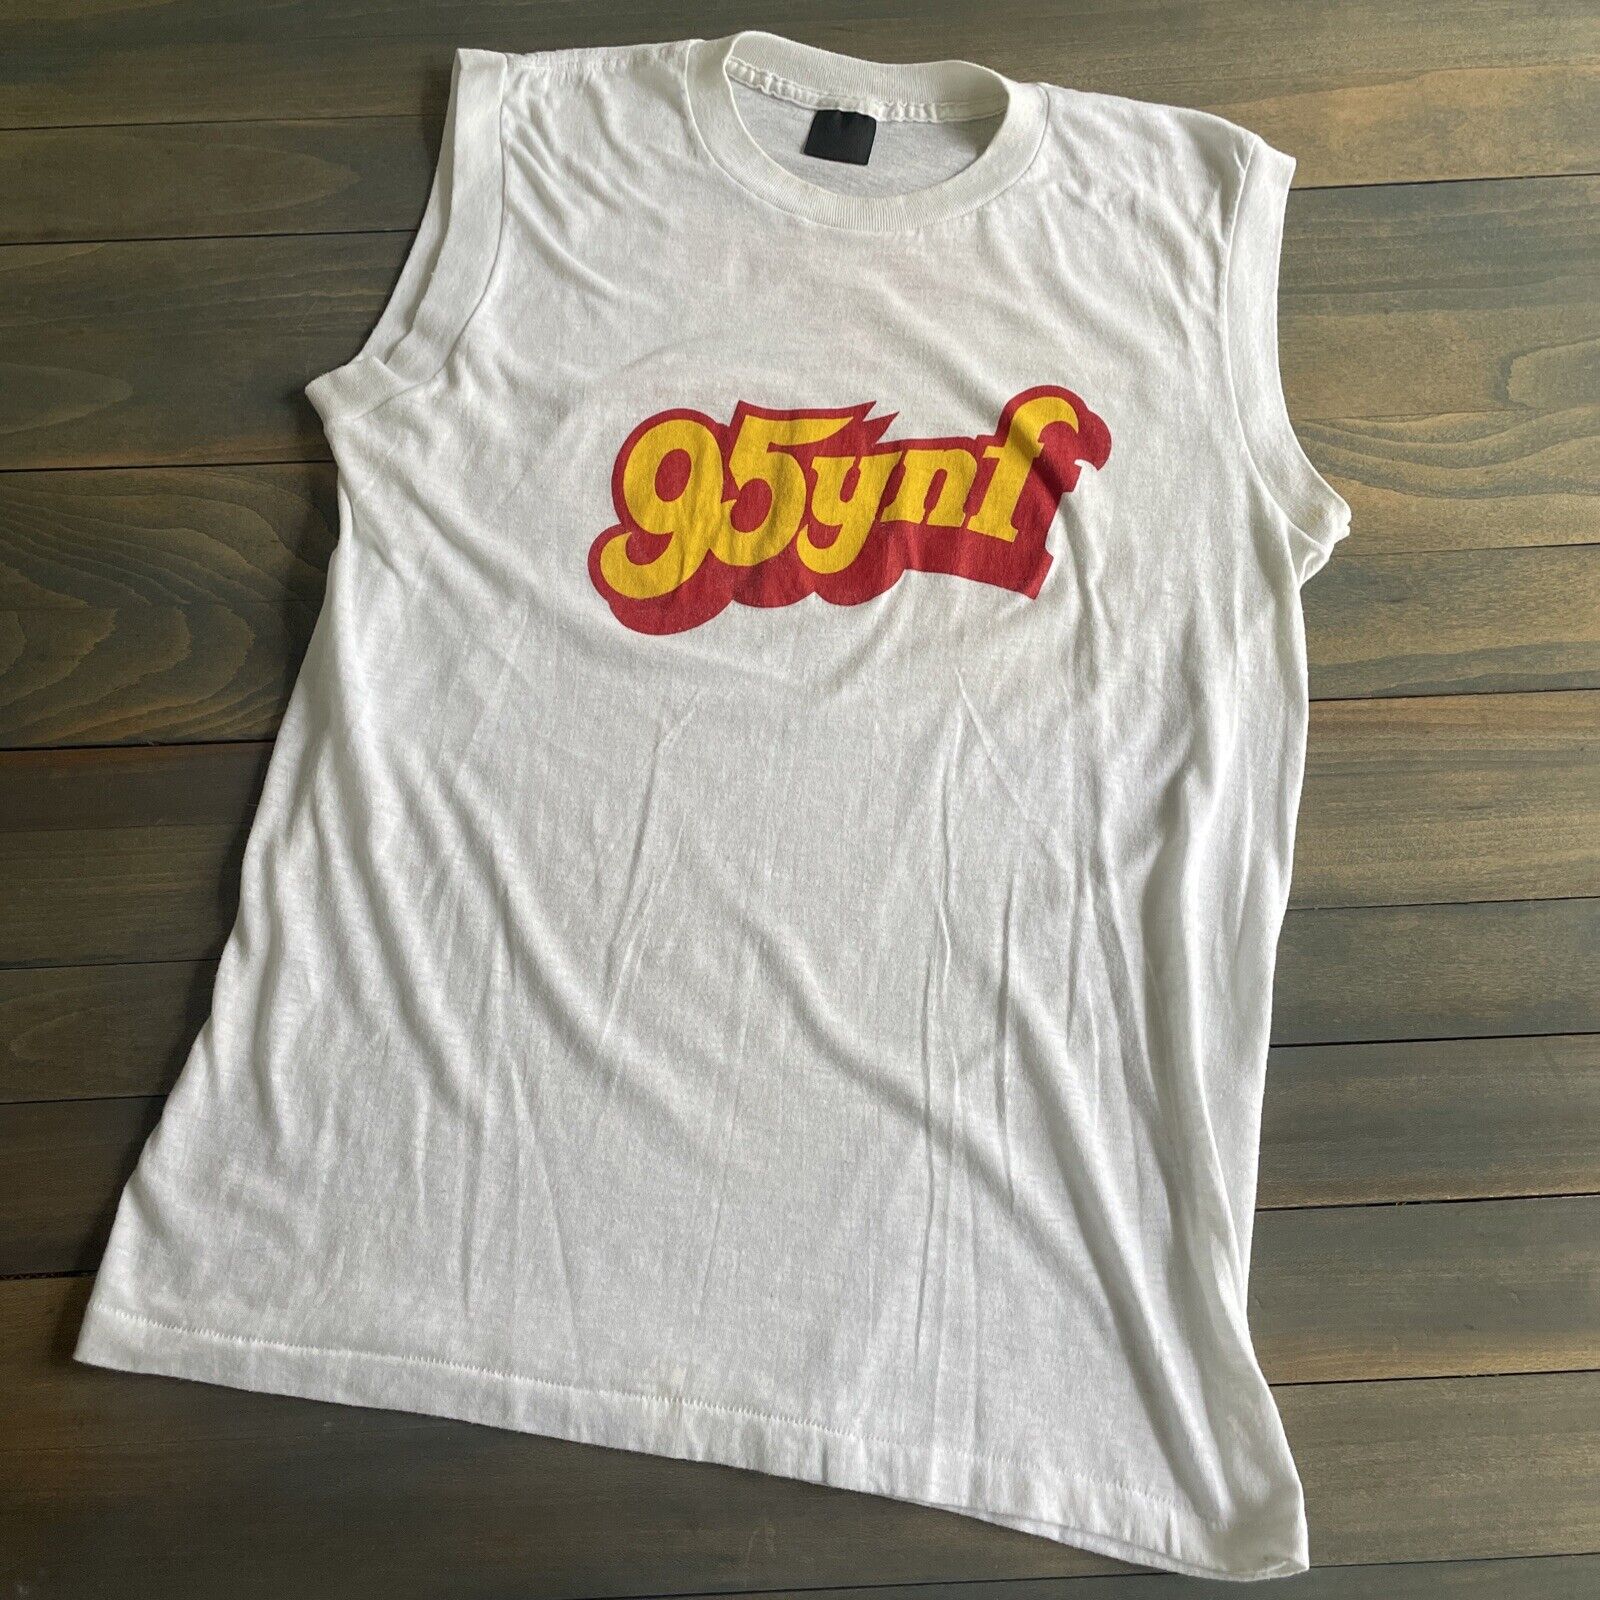 Vintage 95ynf Tampa Bay Rock Radio Station Promo Tank Top White T-Shirt - Large